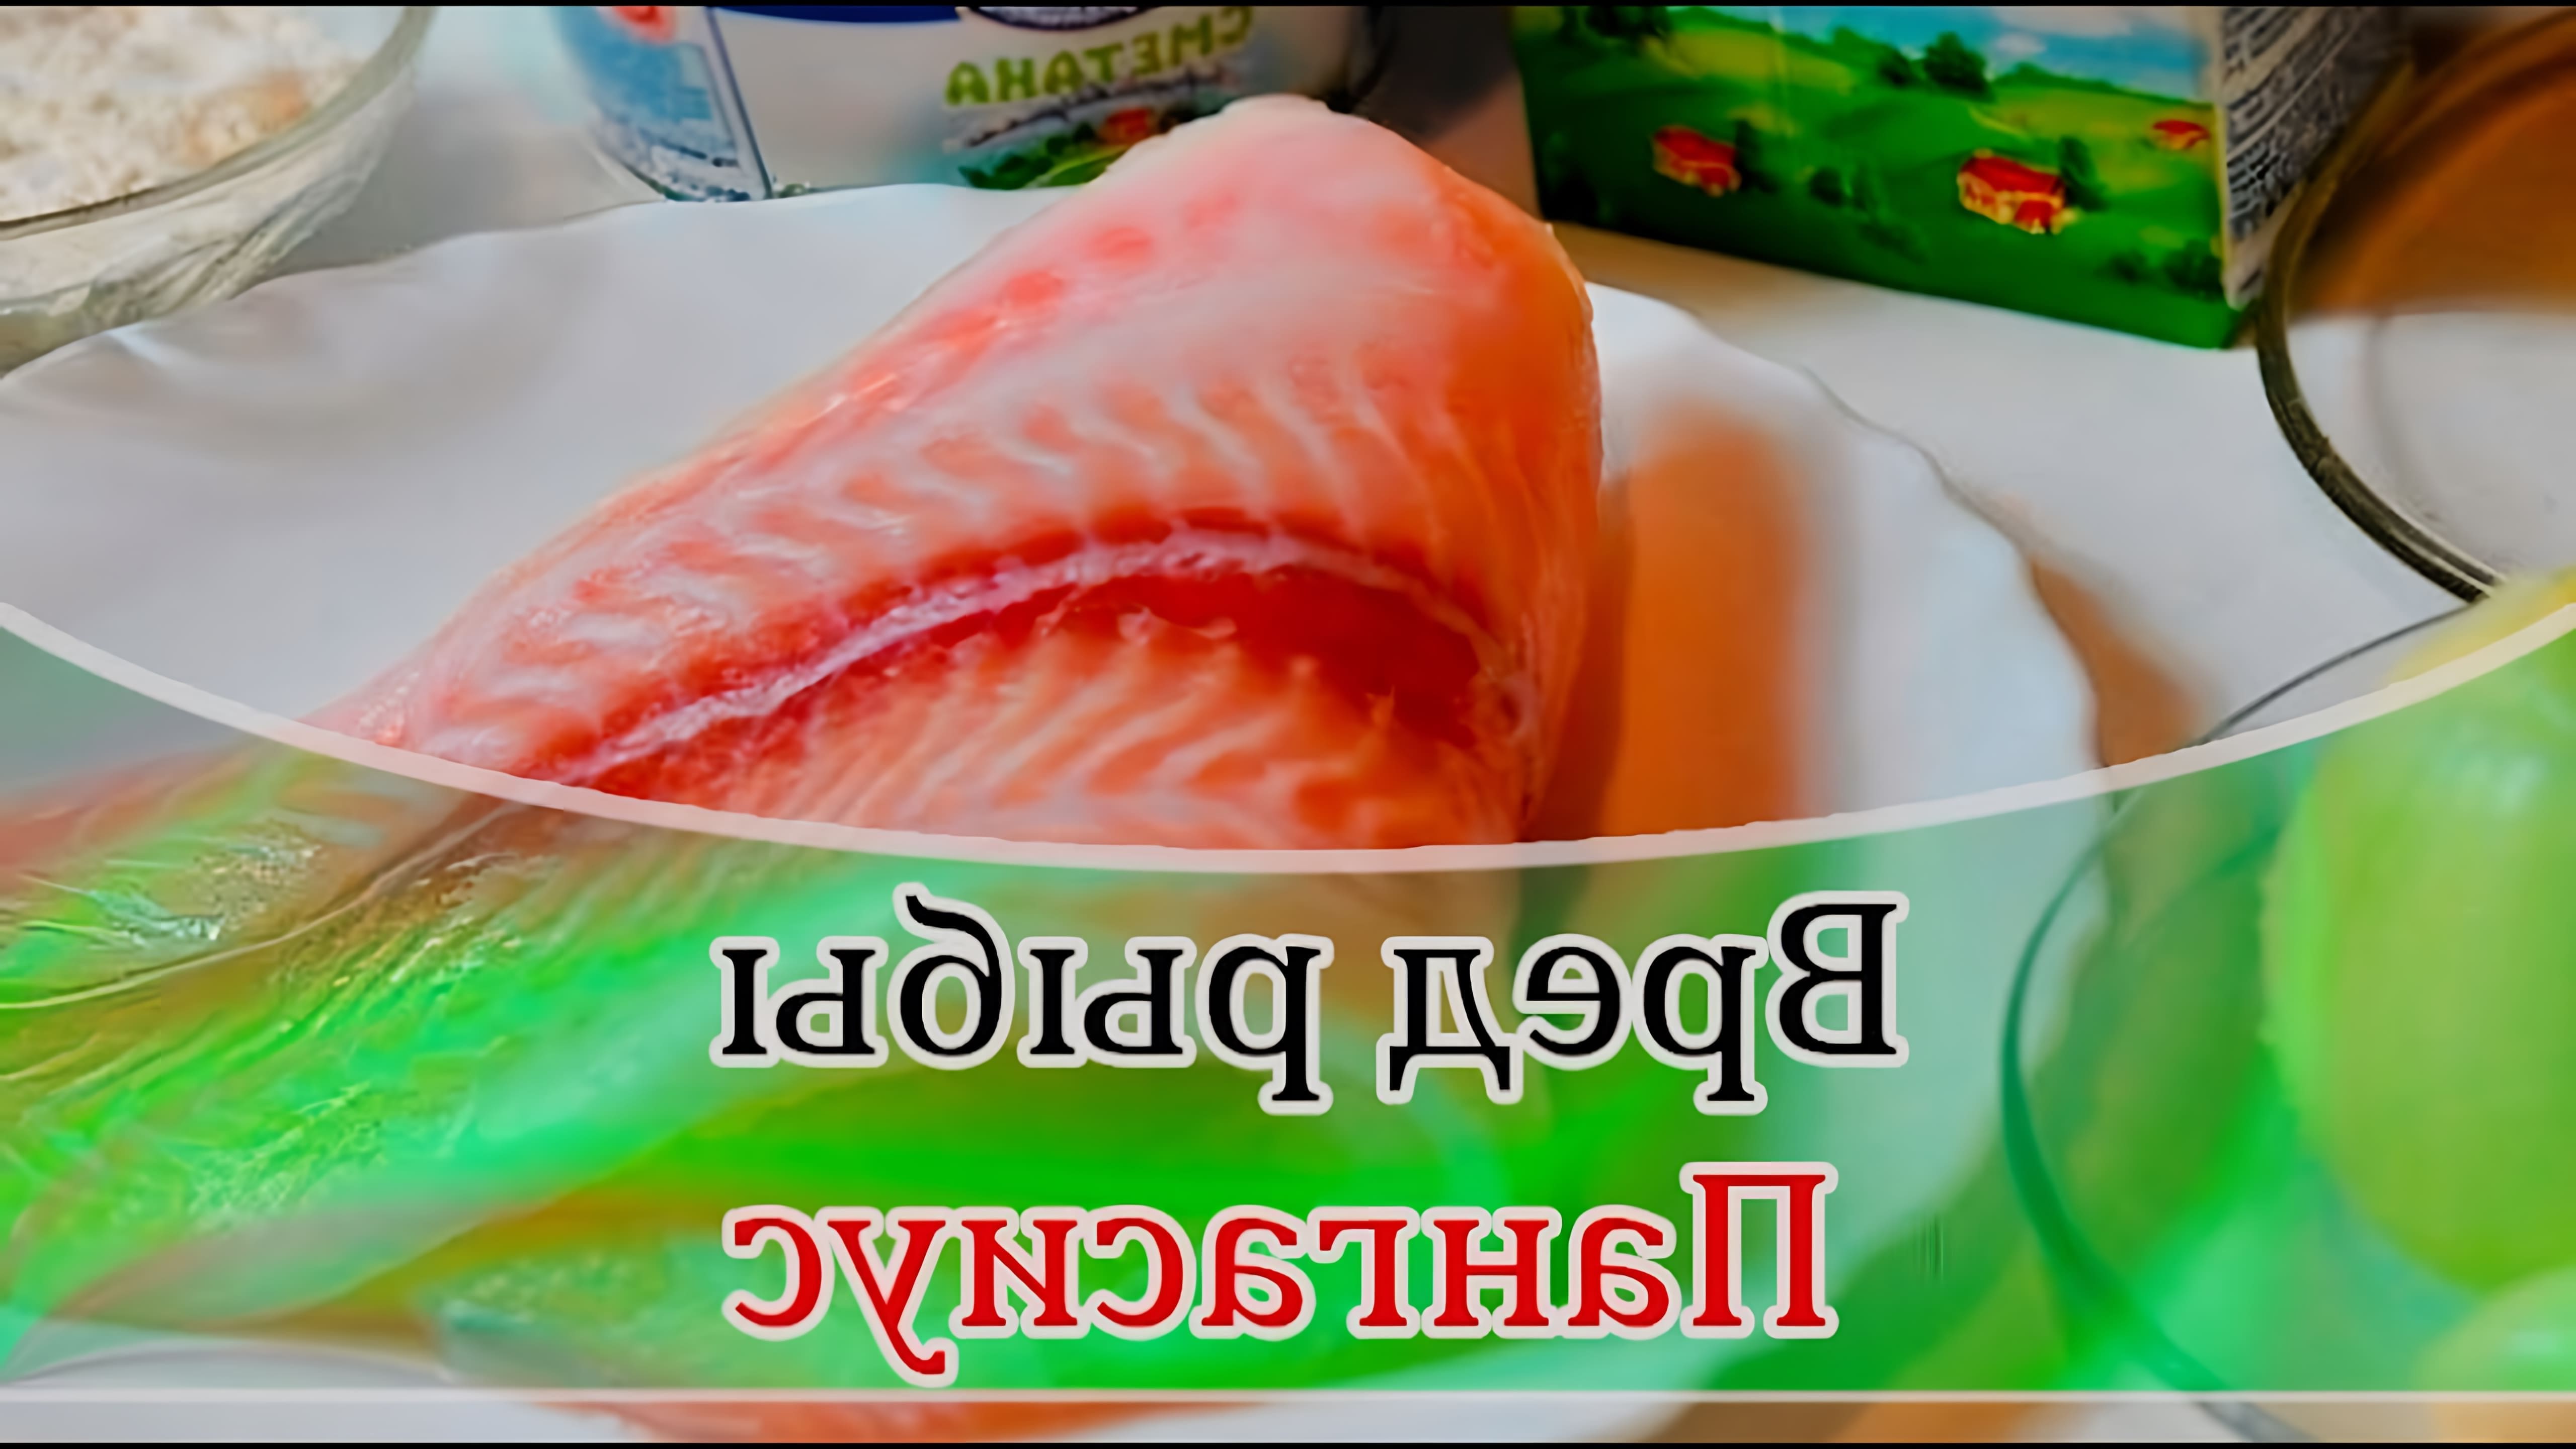 В этом видео рассказывается о вреде рыбы пангасиус, которая является популярным и востребованным продуктом на рынке